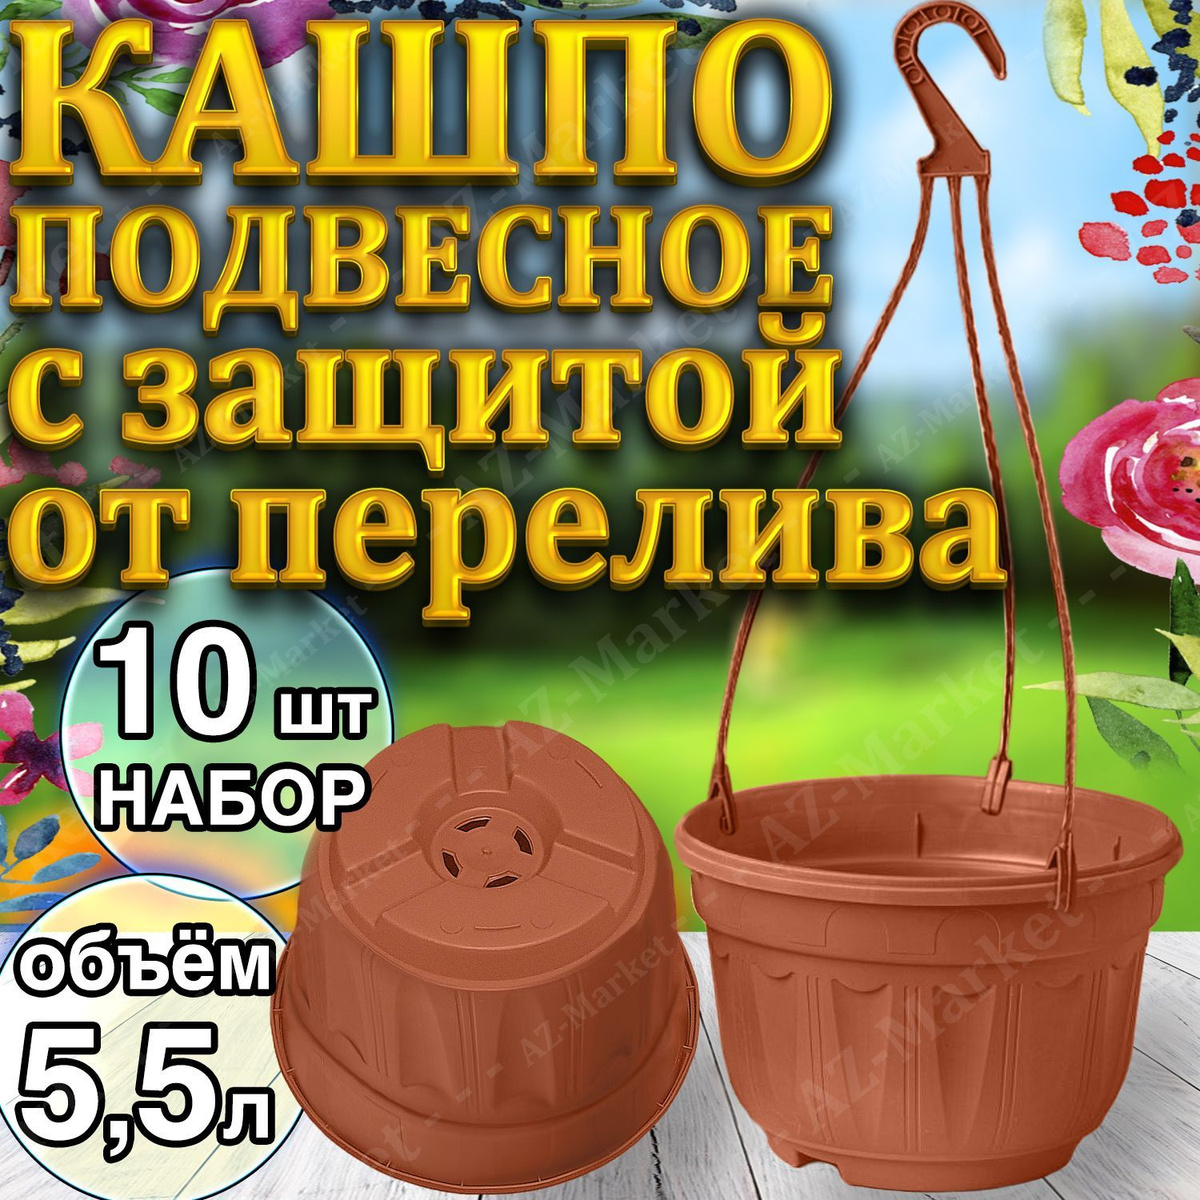 Кашпо БОЛЬШОЕ подвесное с защитой от перелива 5,5л уличное для цветов и растений, садовый набор 10шт Терракотовый (коричневый)